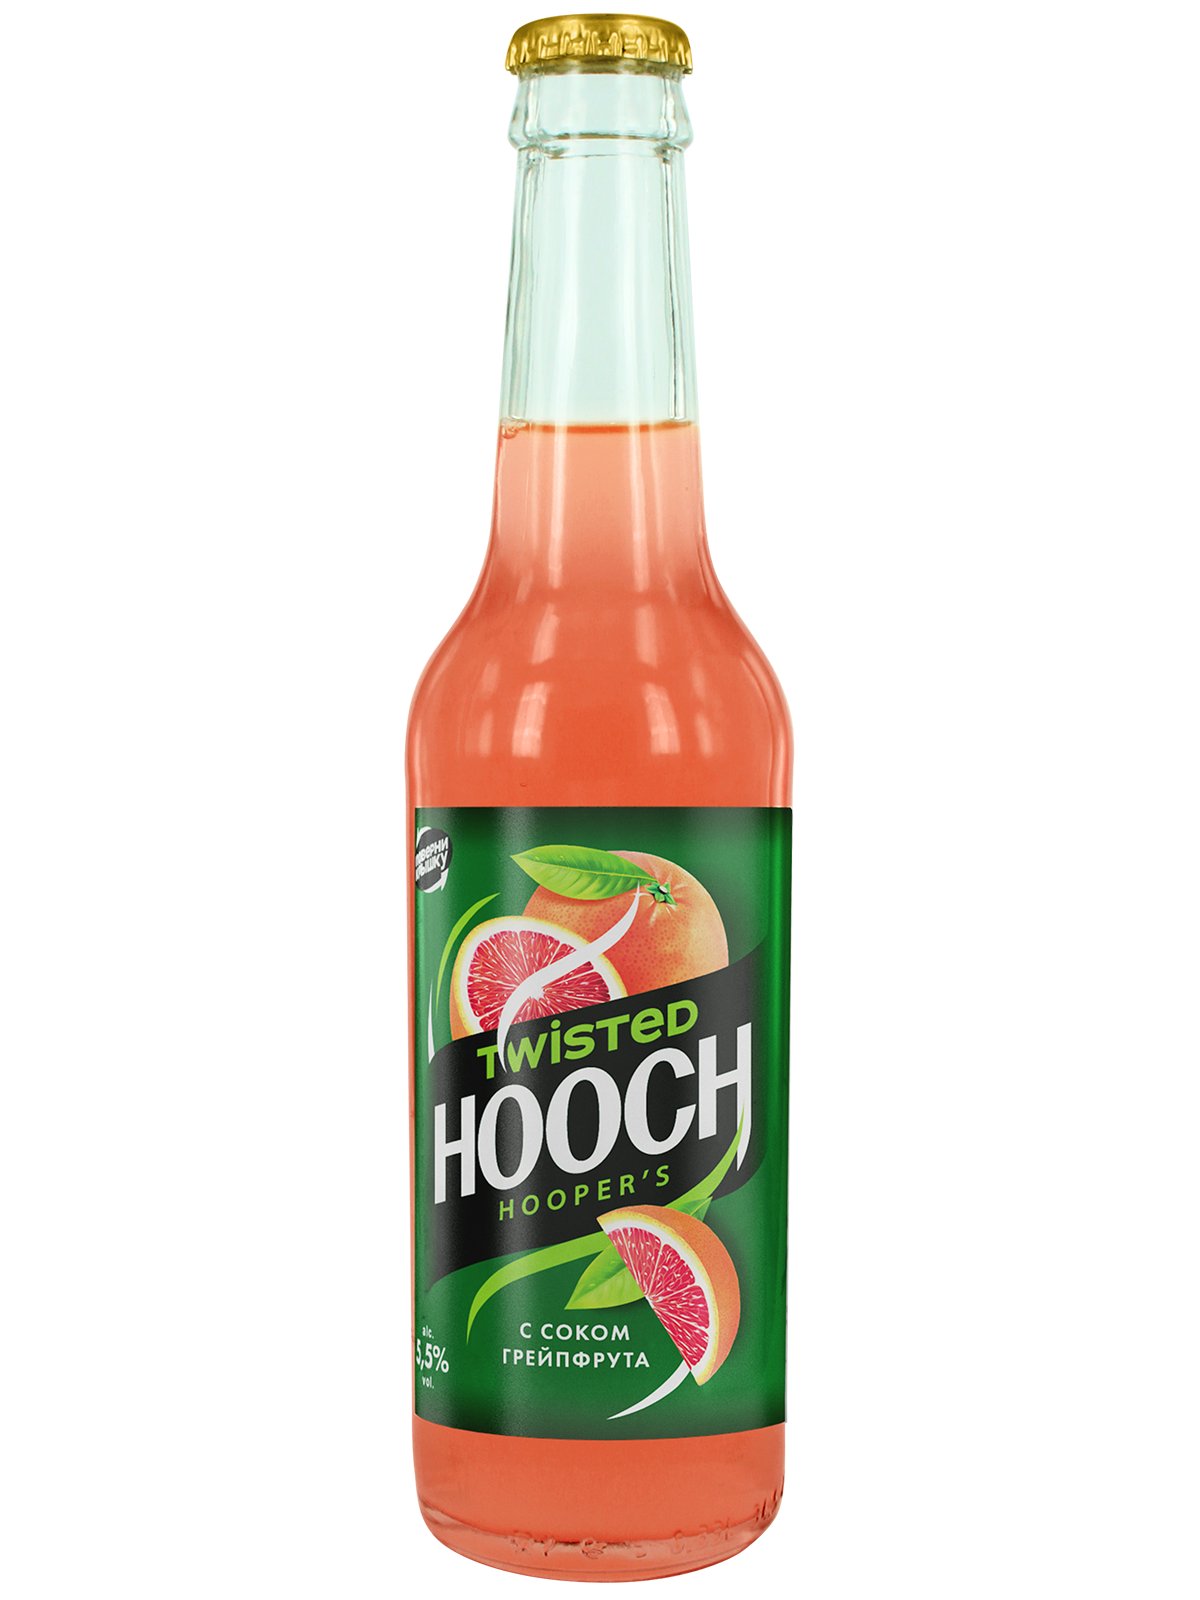 Пиво hooch. Hooch грейпфрут. Коктейль Хуч грейпфрут. Алкогольный напиток с грейпфрутом Hooch. Пиво Hooch грейпфрут.